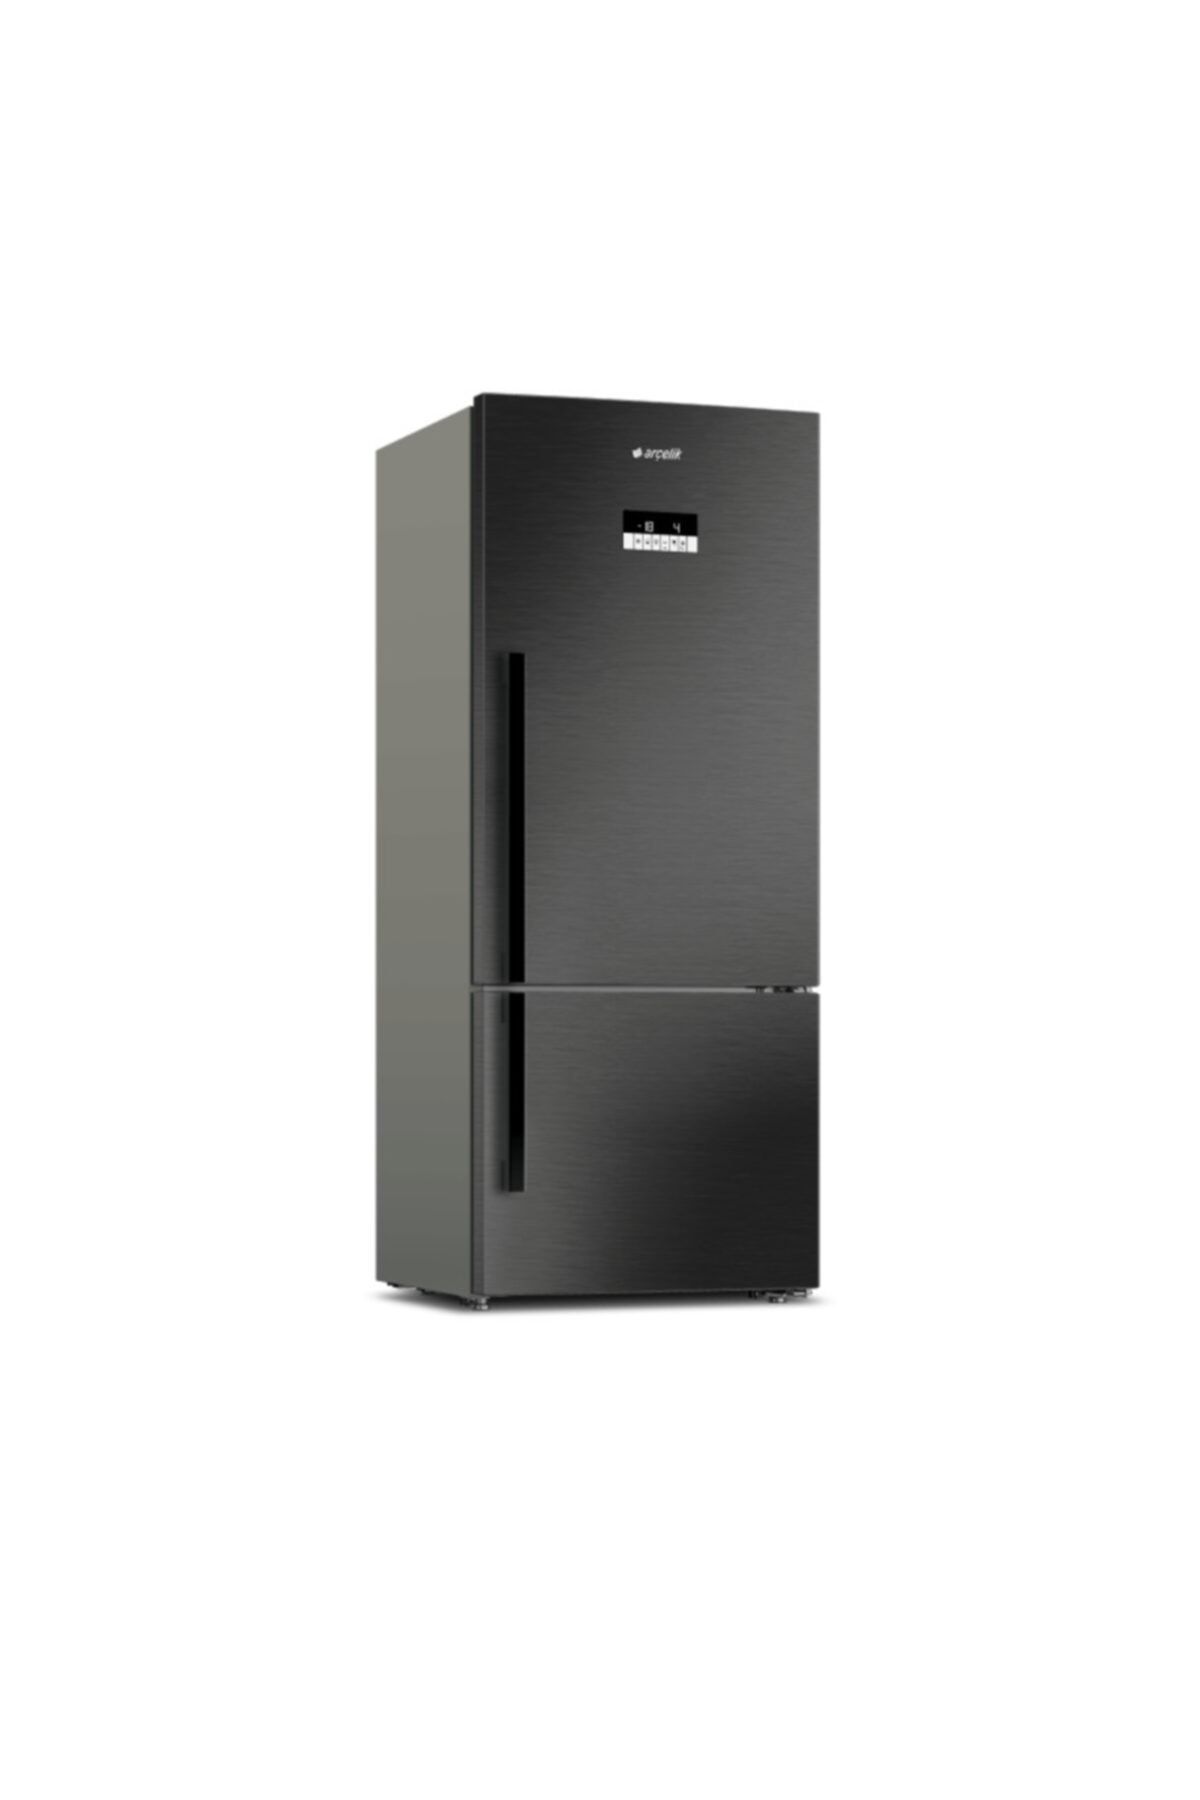 Arçelik 274 580 EDI Buzdolabı A++ No Frost 580 l Antrasit Siyah Fiyat